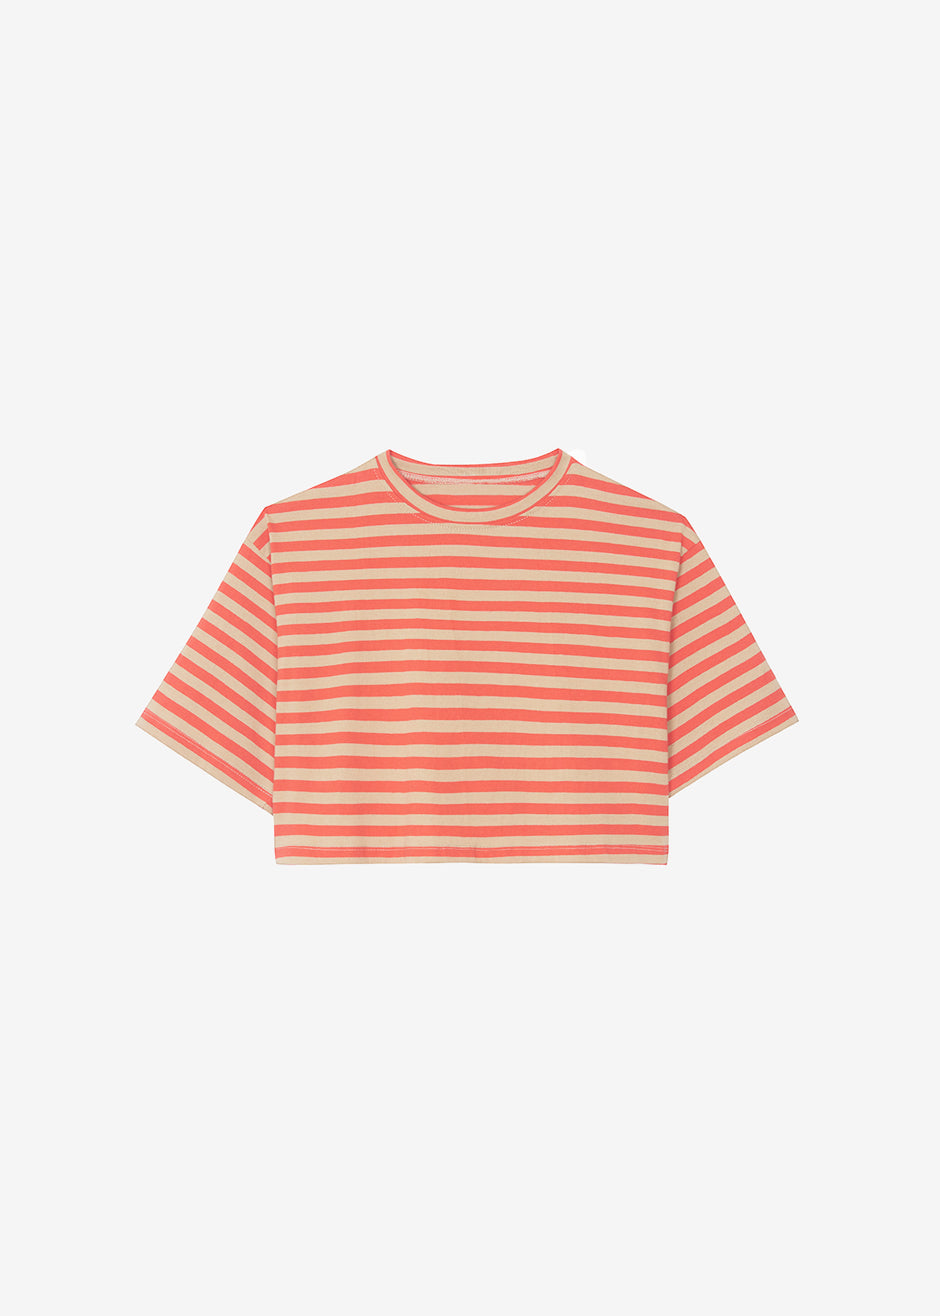 Karina Cropped T-Shirt - Tangerine/Camel - 8